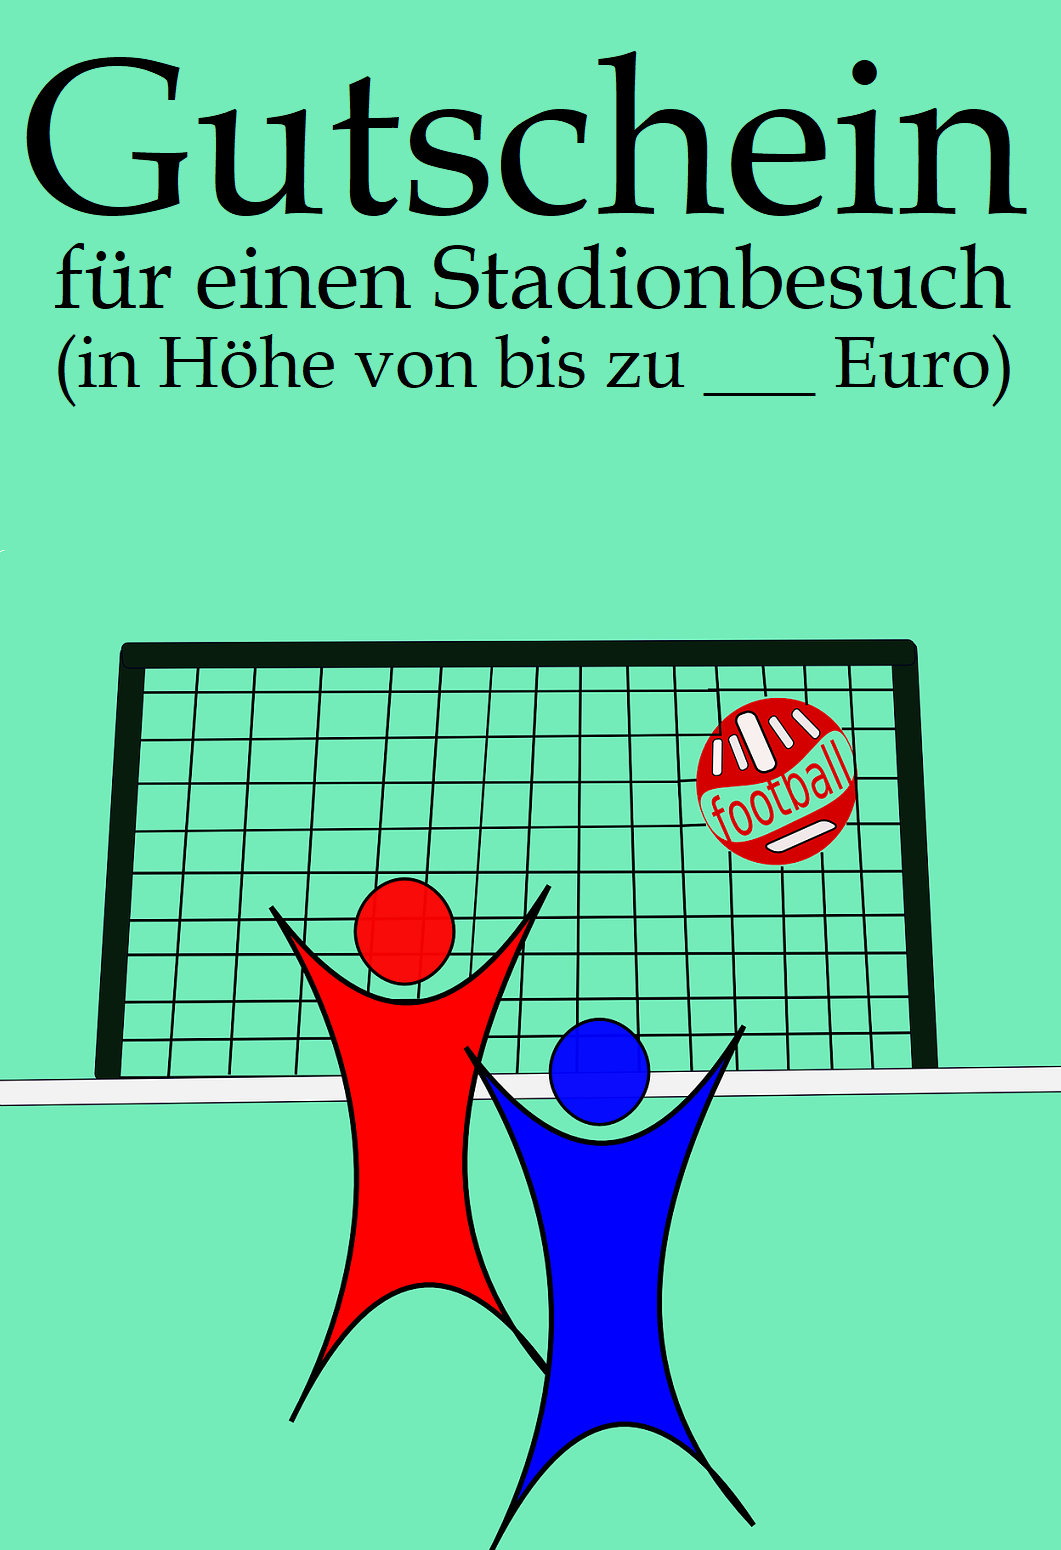 Gutschein-Vorlage Stadionbesuch 13c